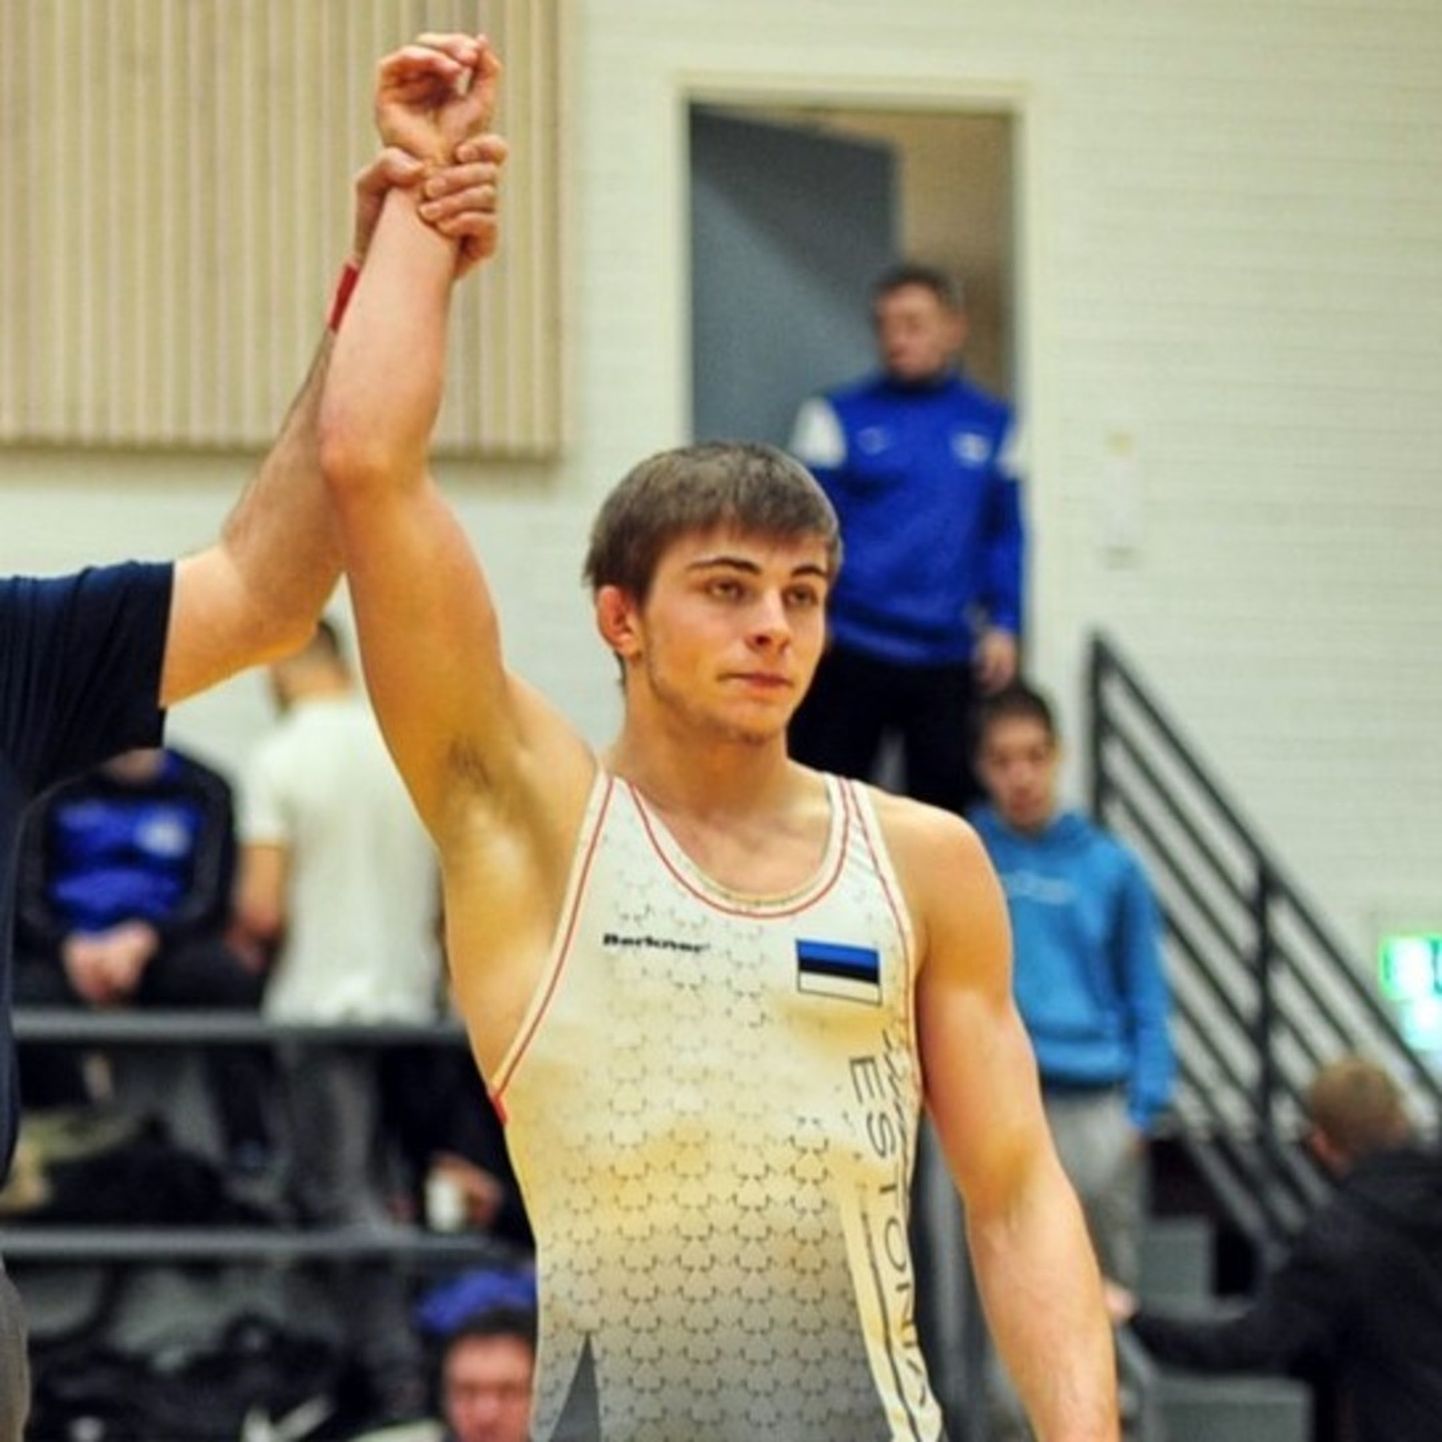 20aastane Erik Reinbok võitis tiitlivõistlustel vabamaadluses Eestile medali enam kui kümne aastase vaheaja järel.